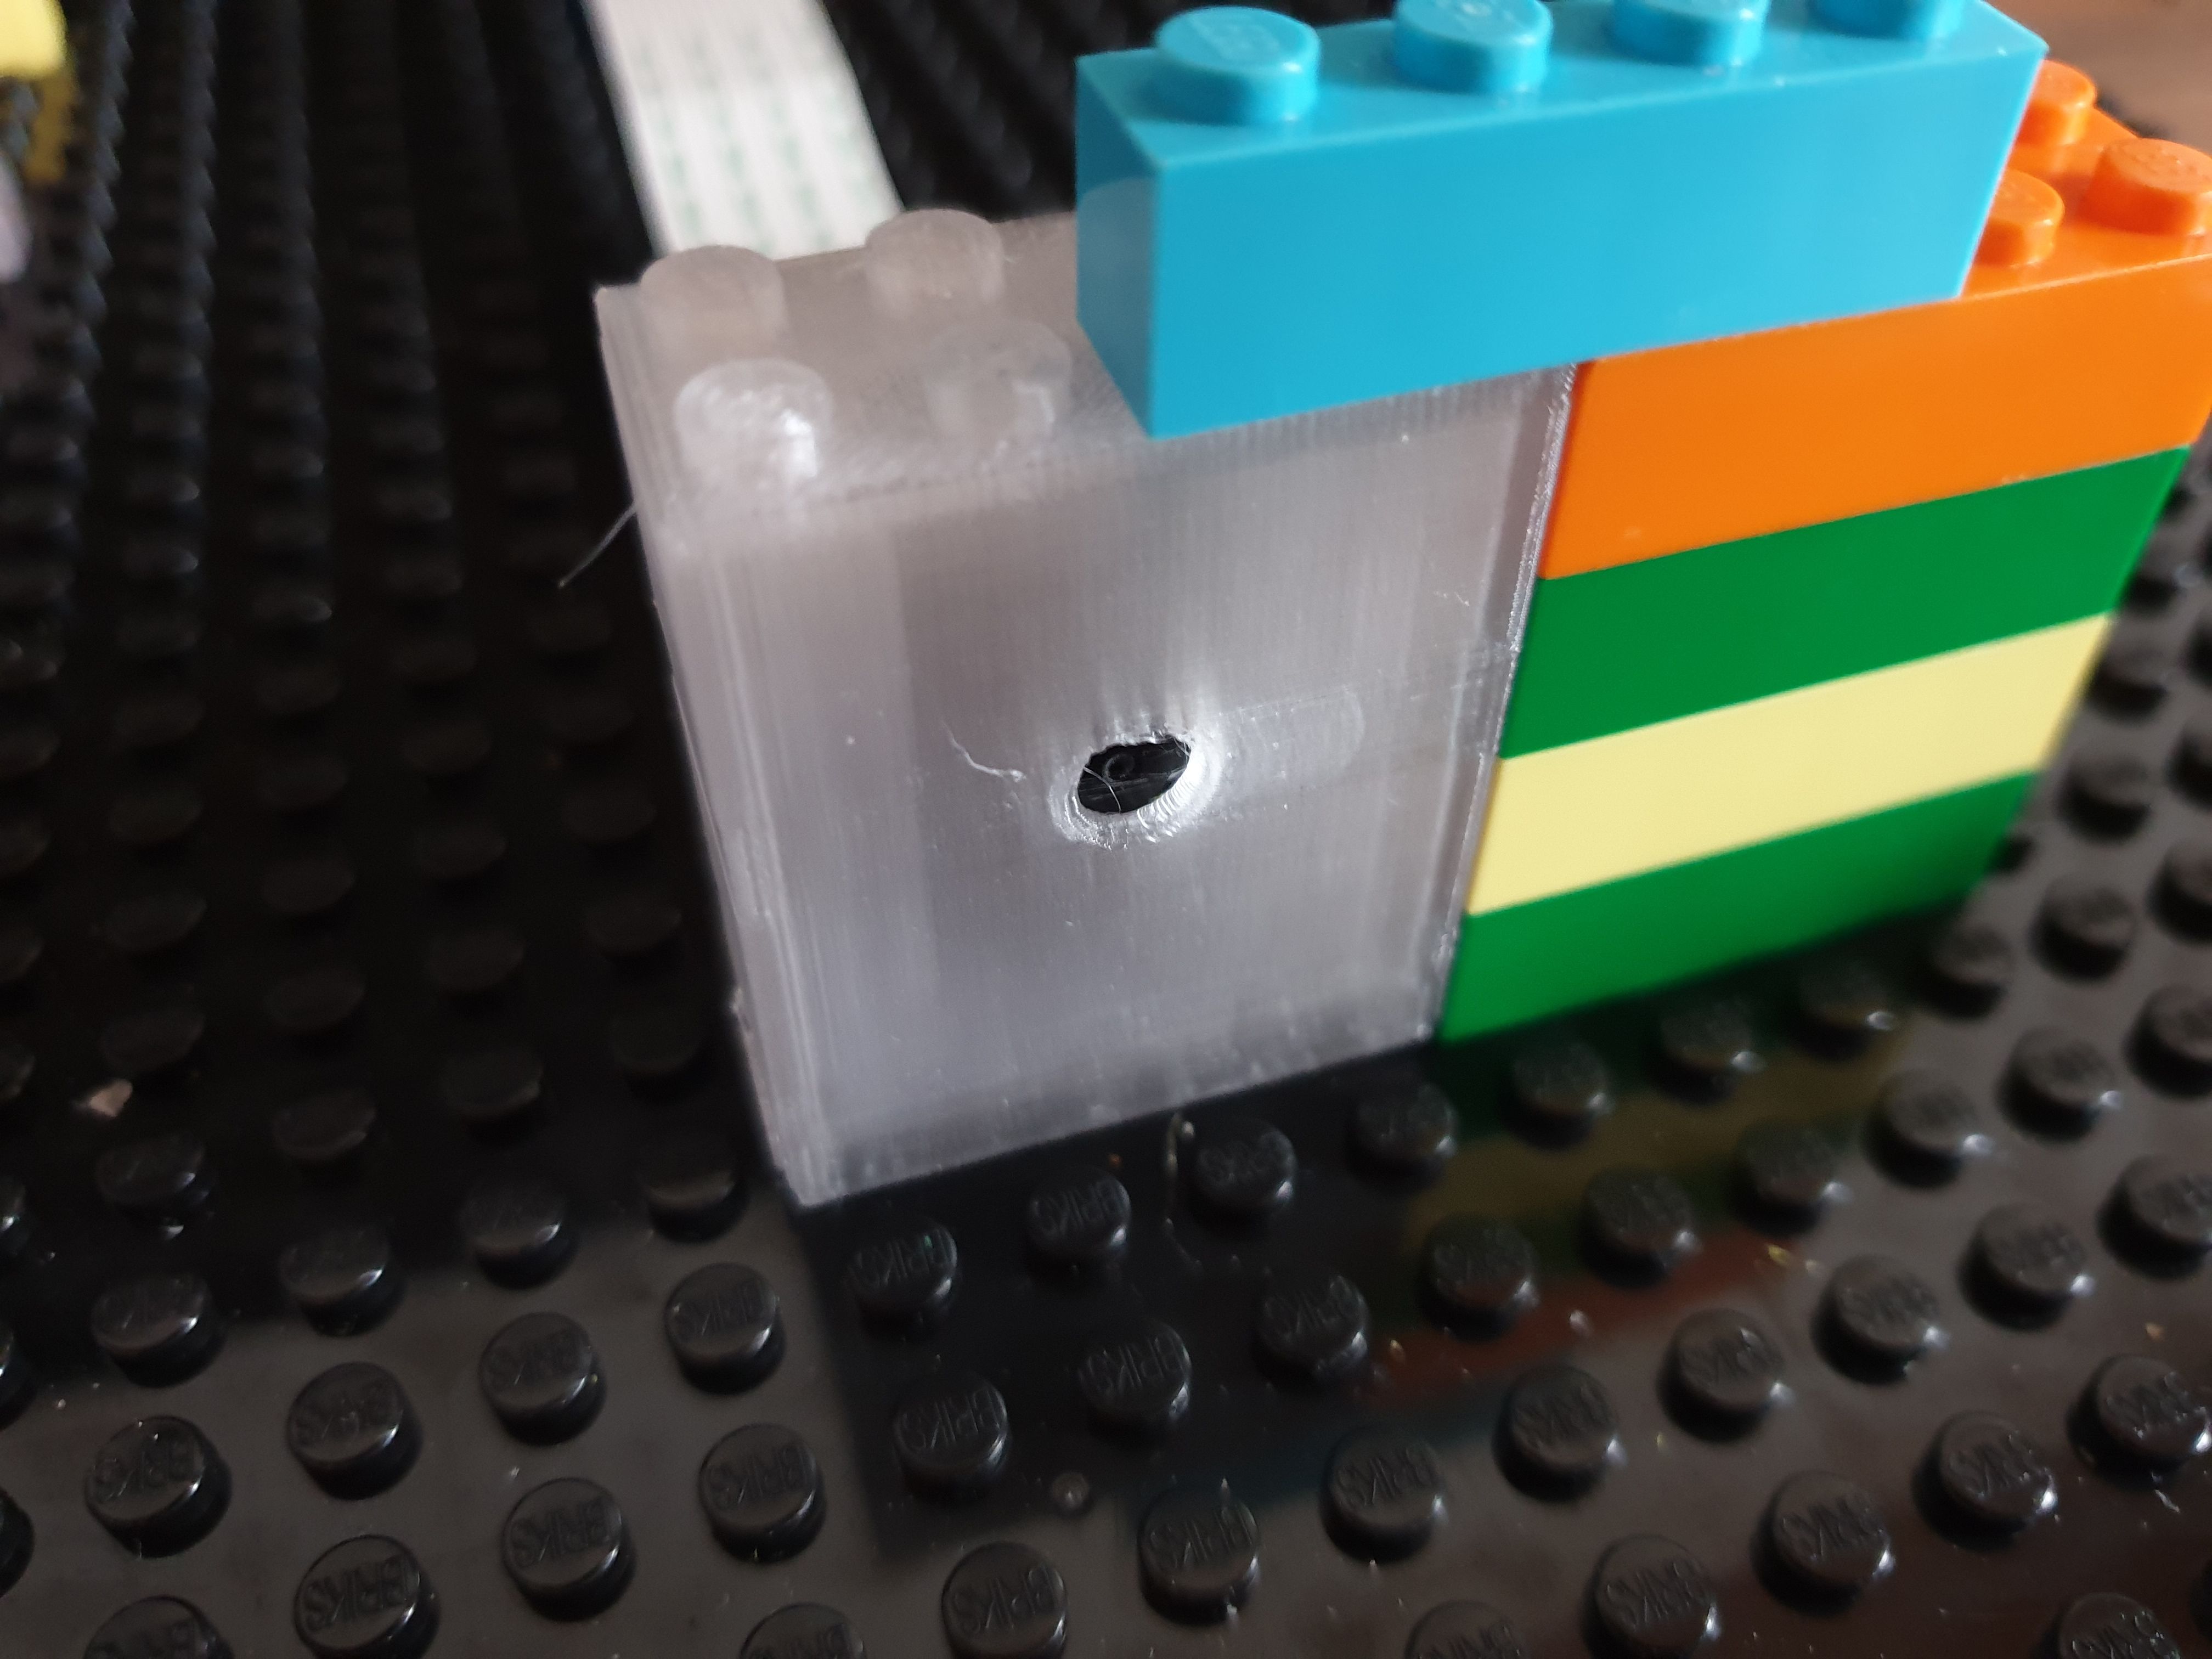 Raspberry-Pi Camera LEGO compatible case